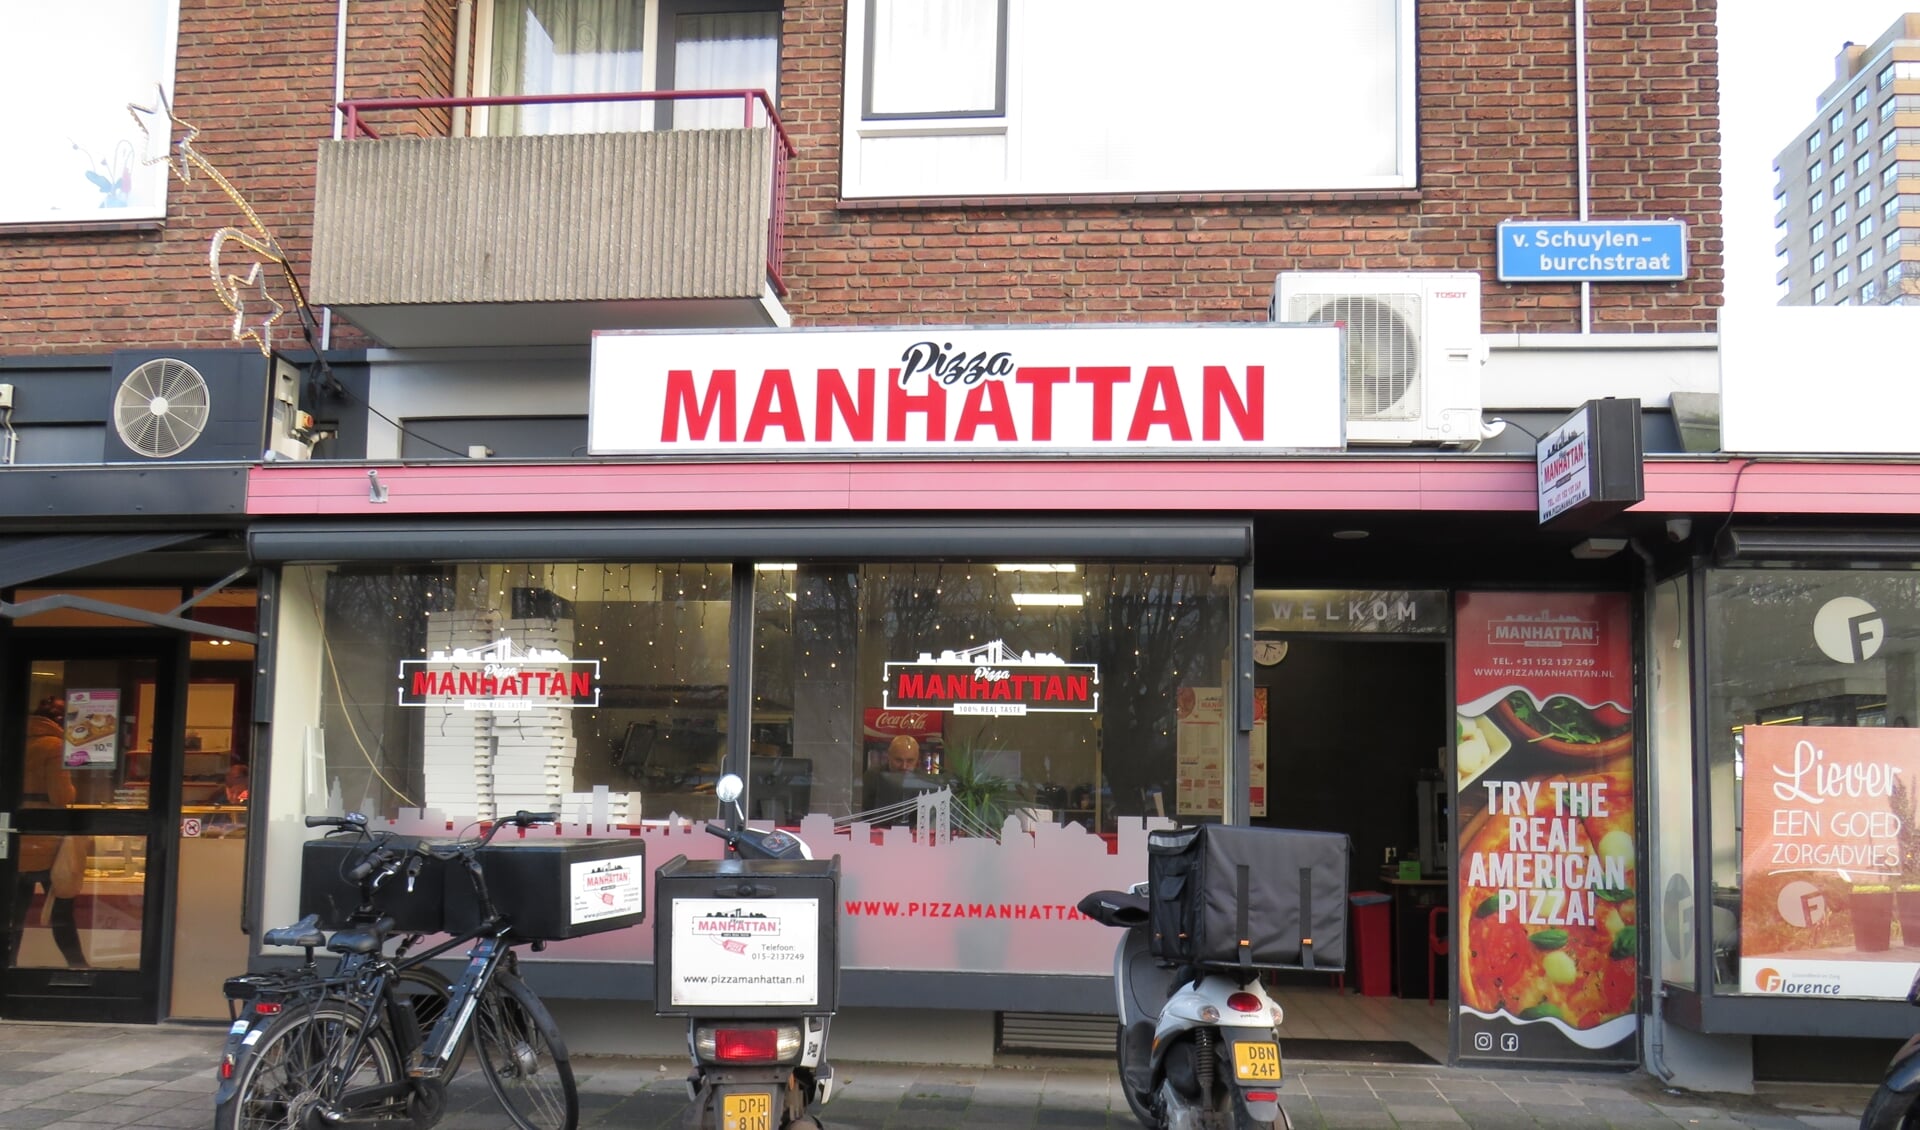 Pizza Manhattan is gevestigd in de Van Schuijlenburchstraat 58, maar je pizza wordt aan huis bezorgd! (Foto: PR) 